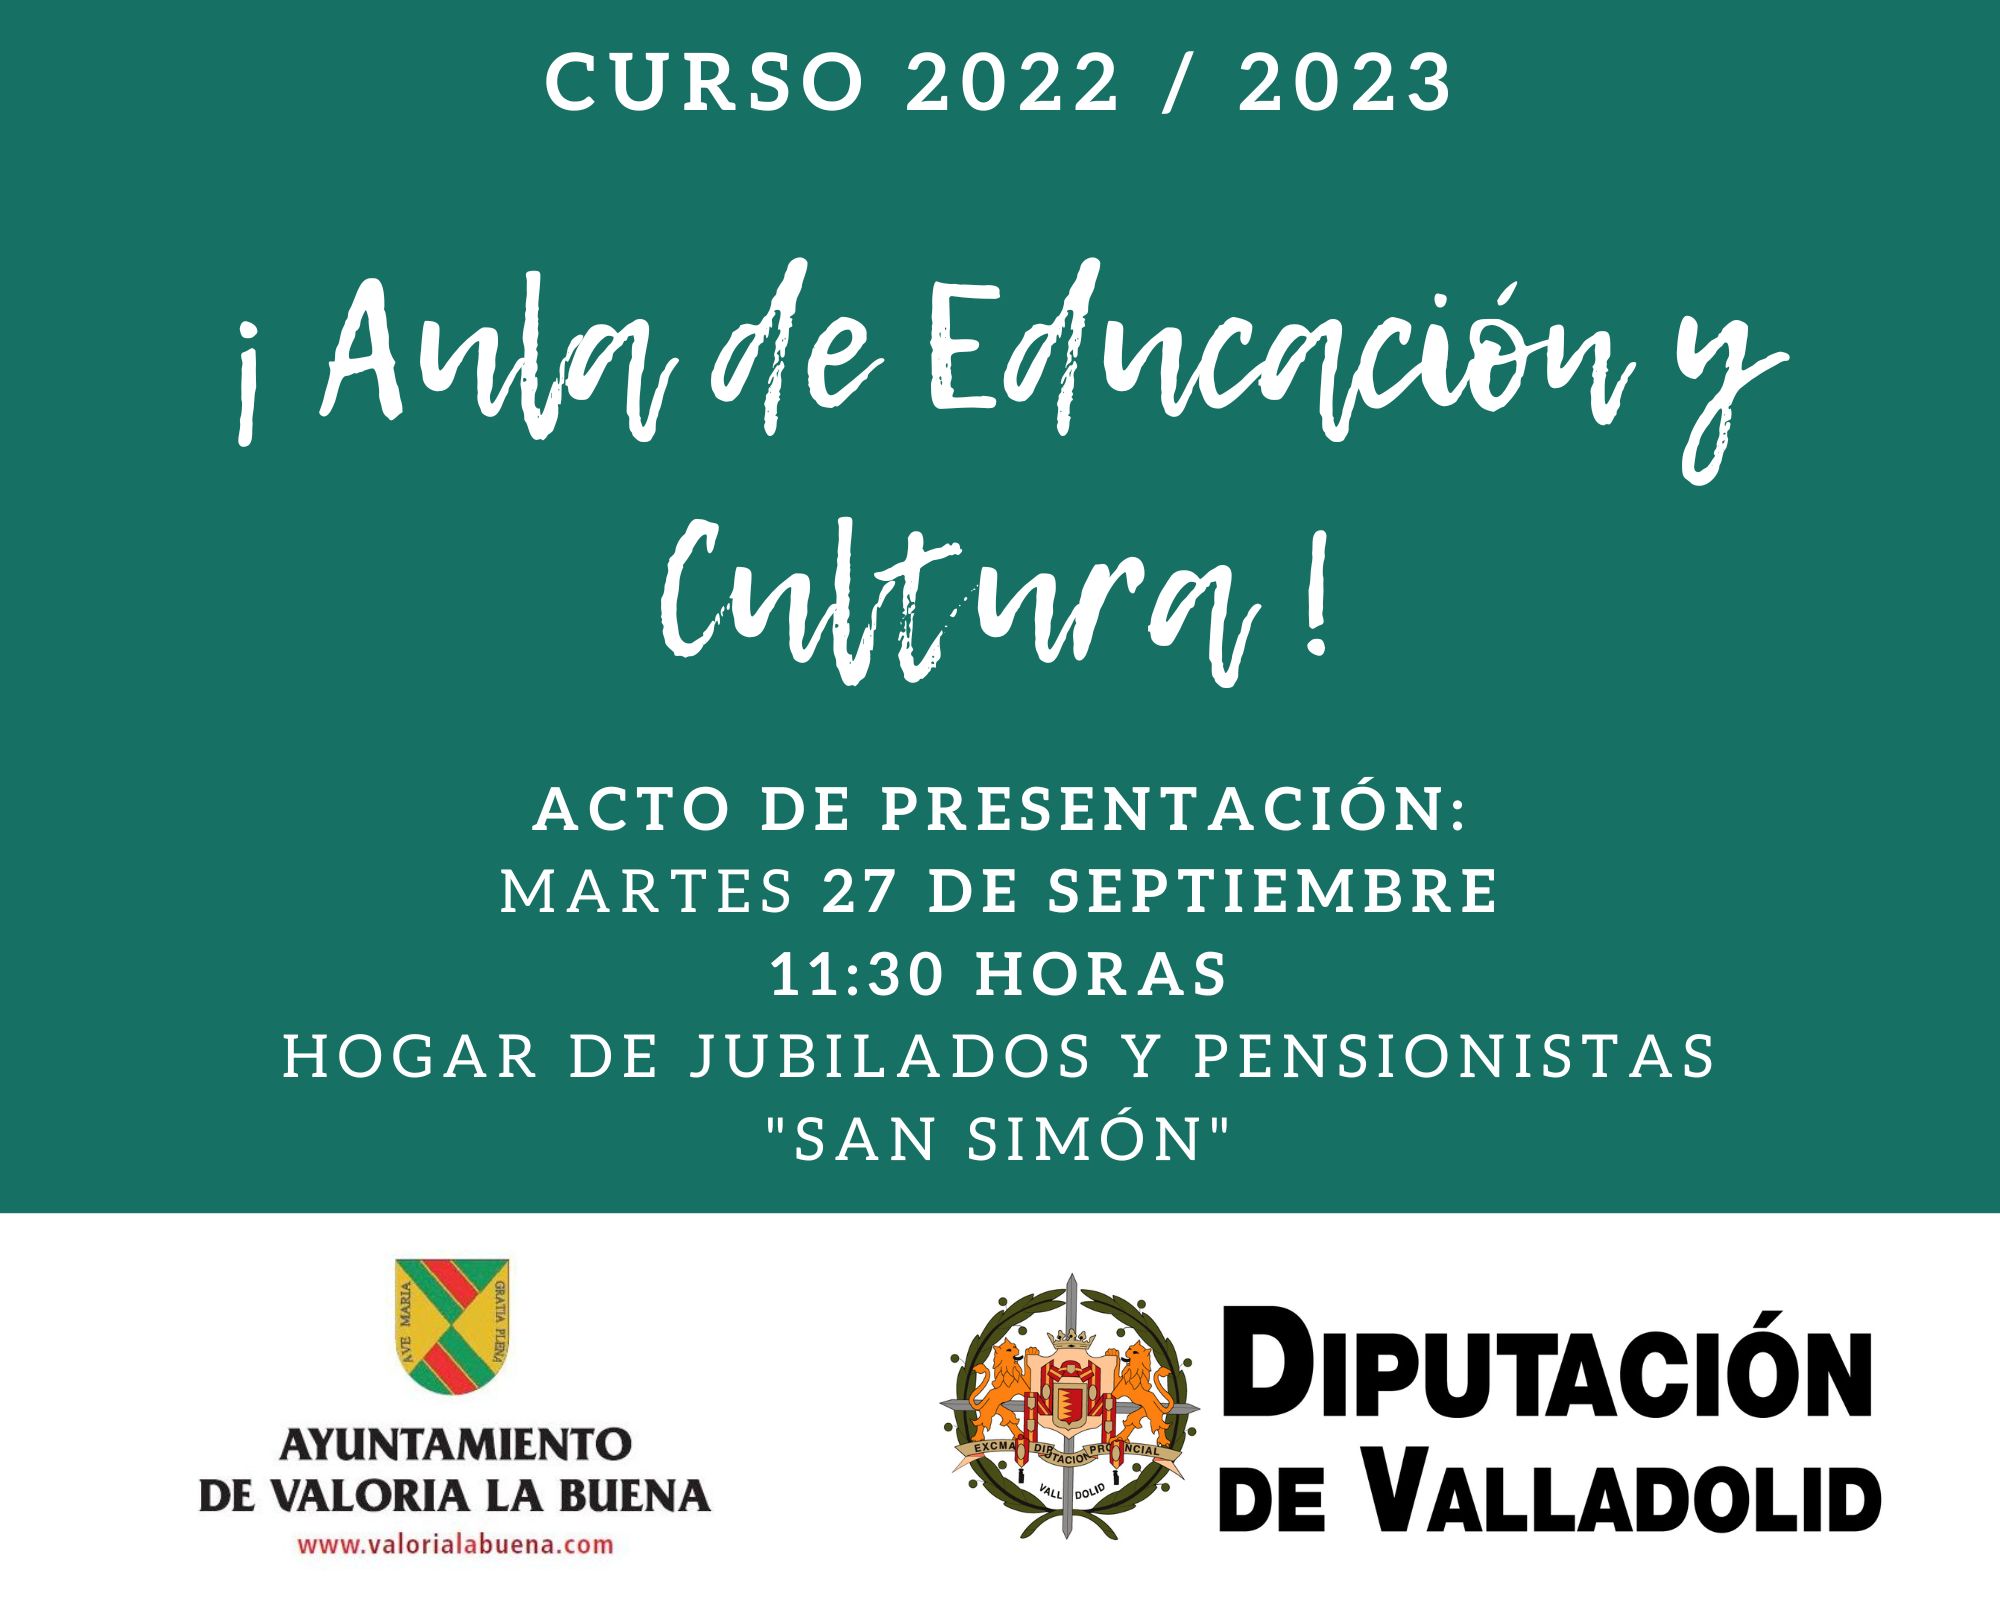 AULA DE EDUCACIÓN Y CULTURA 2022/2023